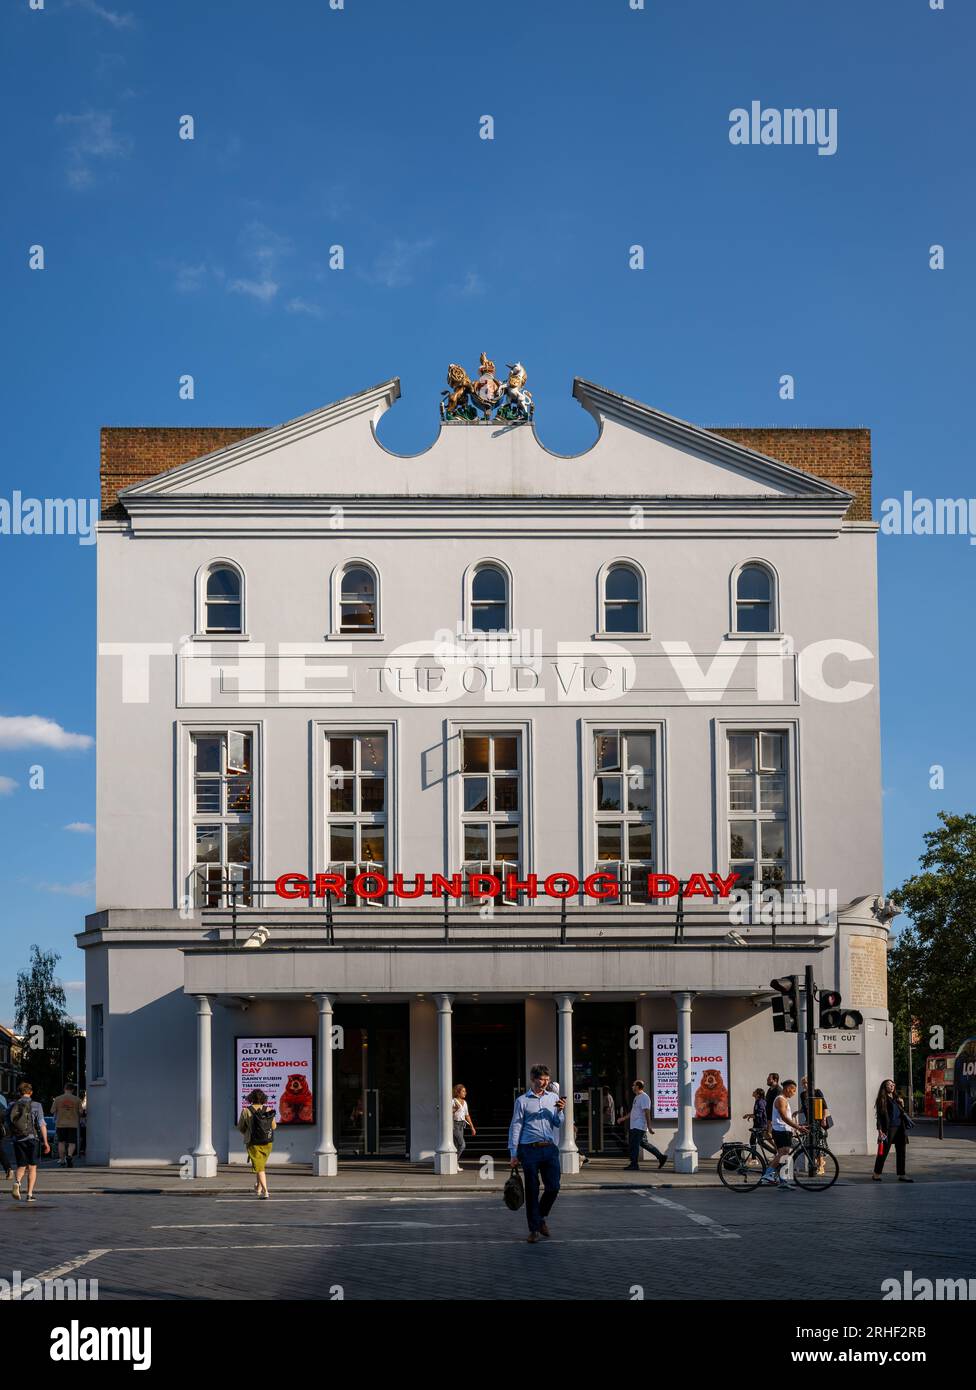 Londra, Regno Unito: The Old Vic, un famoso vecchio teatro (teatro) al 103 The Cut di Londra. Attualmente in riproduzione Groundhog Day. Foto Stock